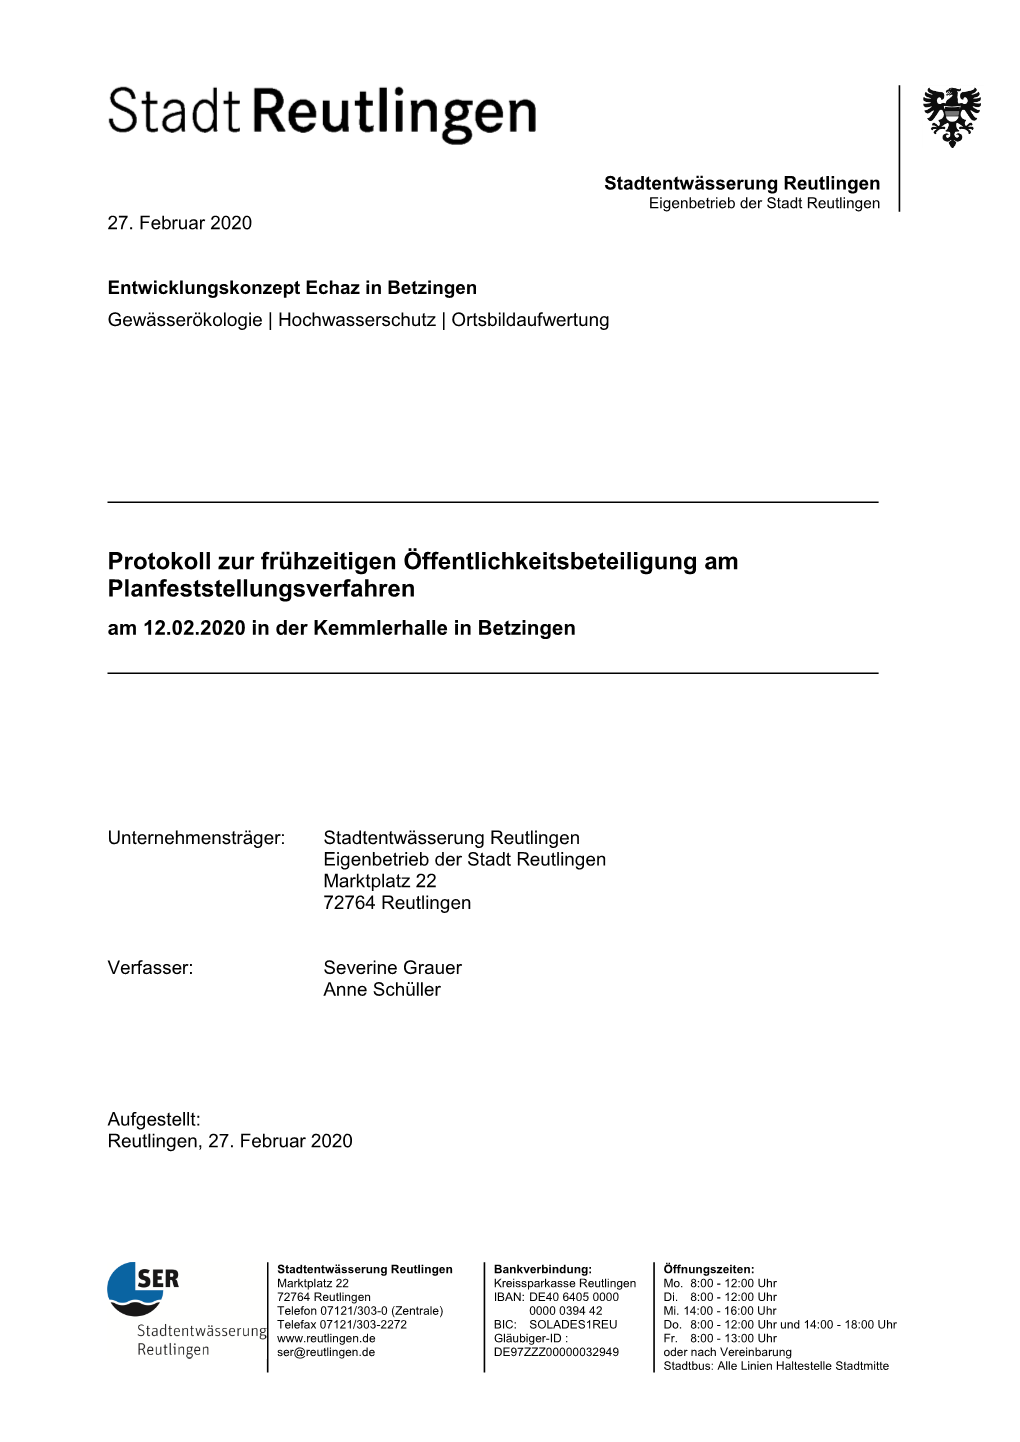 Protokoll Zur Frühzeitigen Öffentlichkeitsbeteiligung Am Planfeststellungsverfahren Am 12.02.2020 in Der Kemmlerhalle in Betzingen